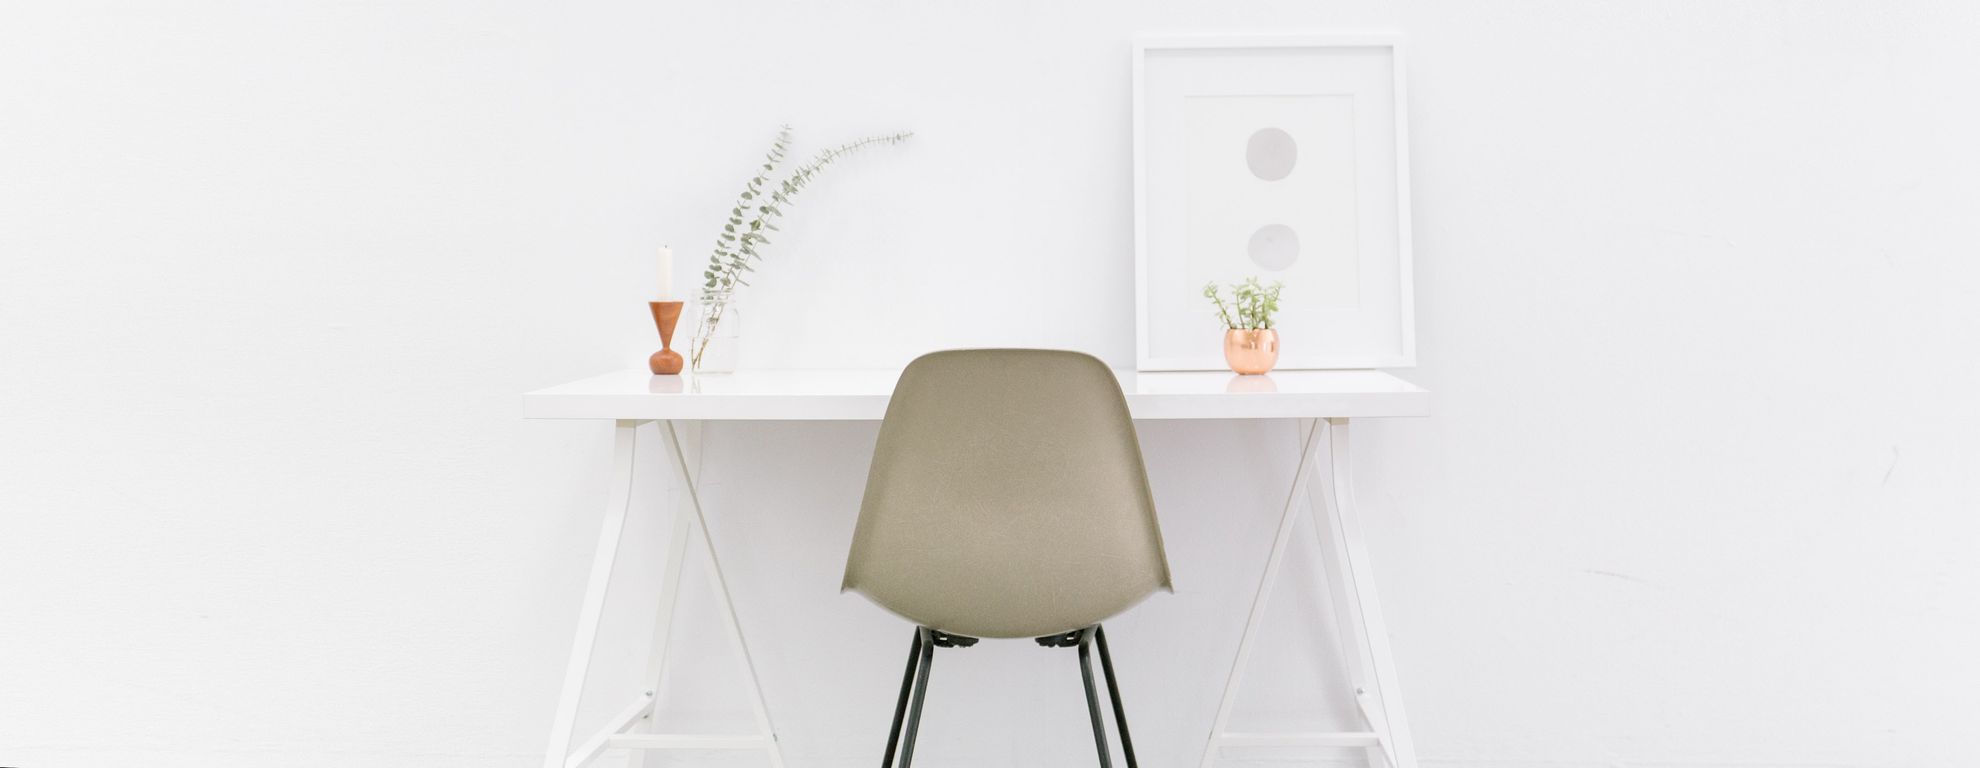 Bureau minimaliste - Featured image